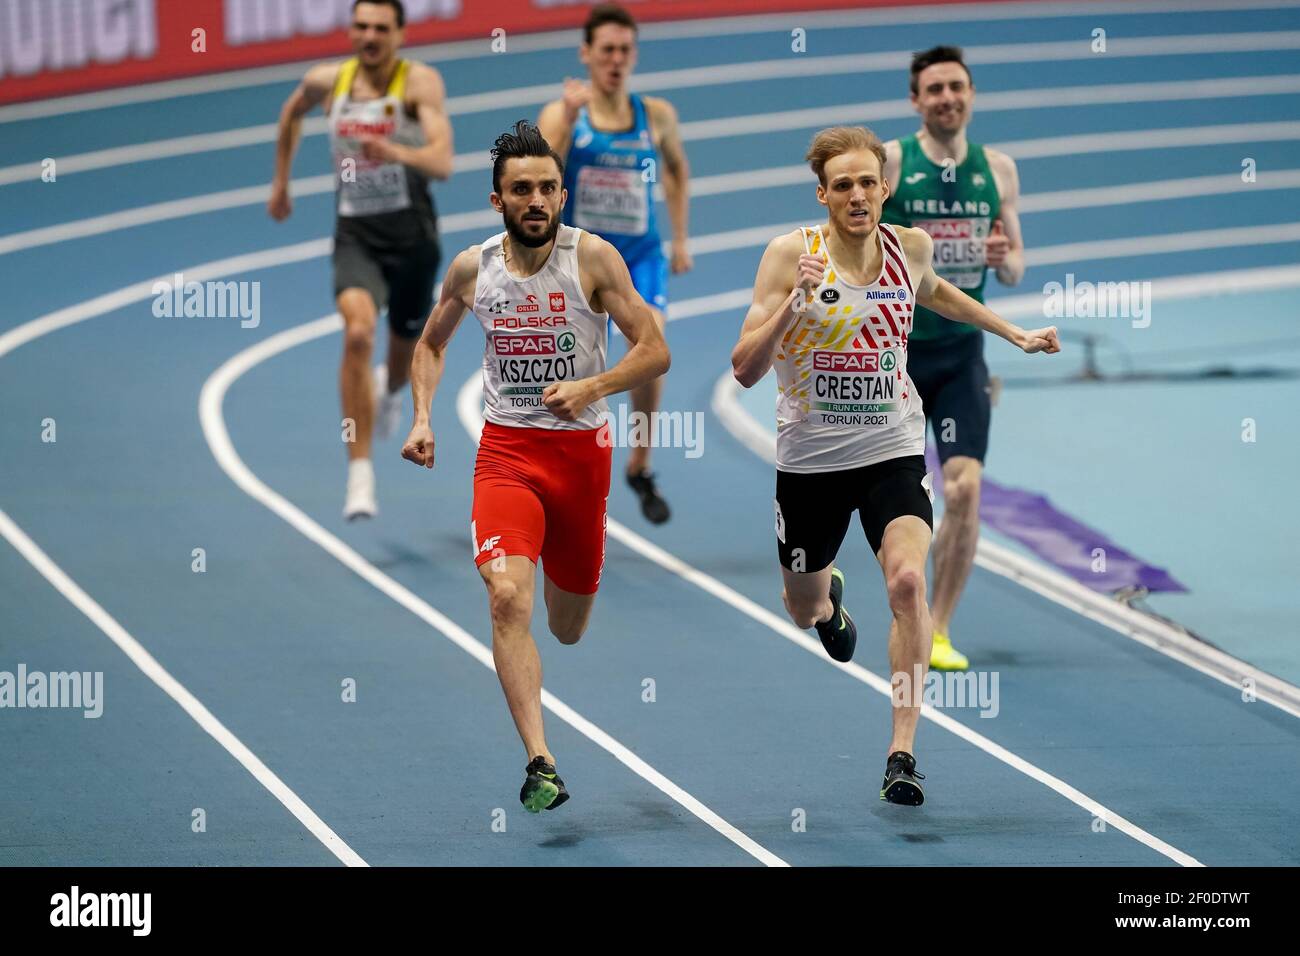 TORUN, POLONIA - 6 MARZO: Adam Kszczot di Polonia ed Eliott Crestan del Belgio gareggiano nella semifinale Mens 800m durante l'European Athletics Indo Foto Stock